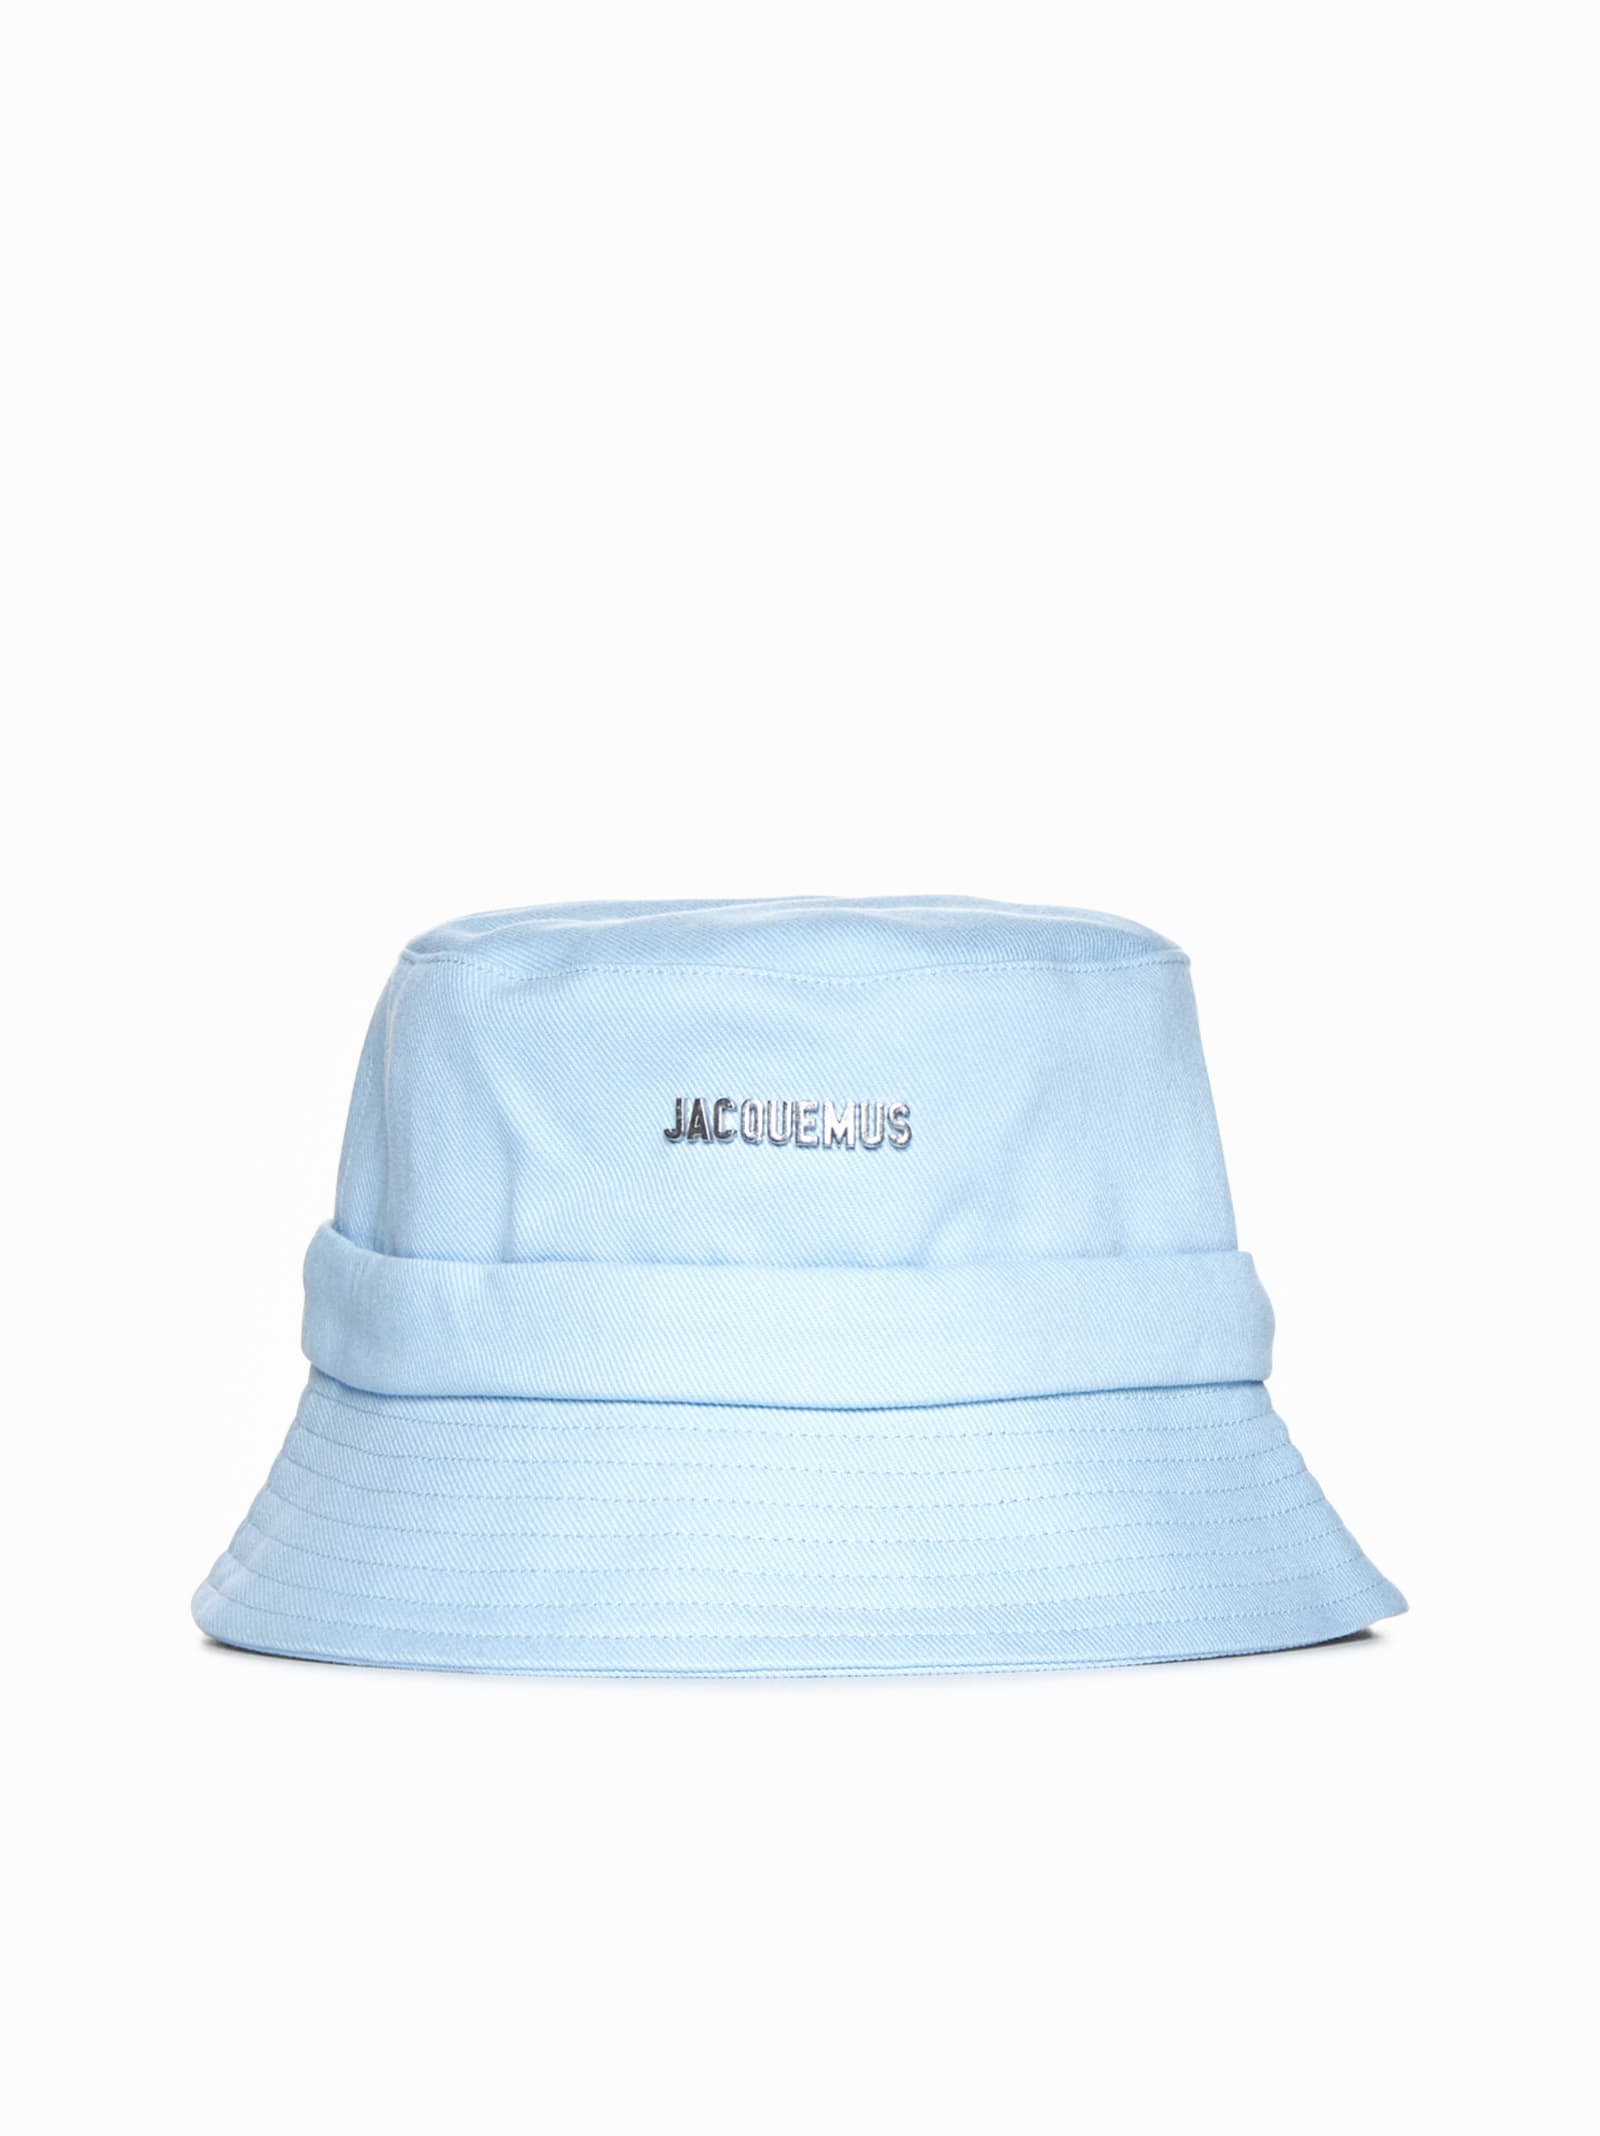 Jacquemus Hat In Blue